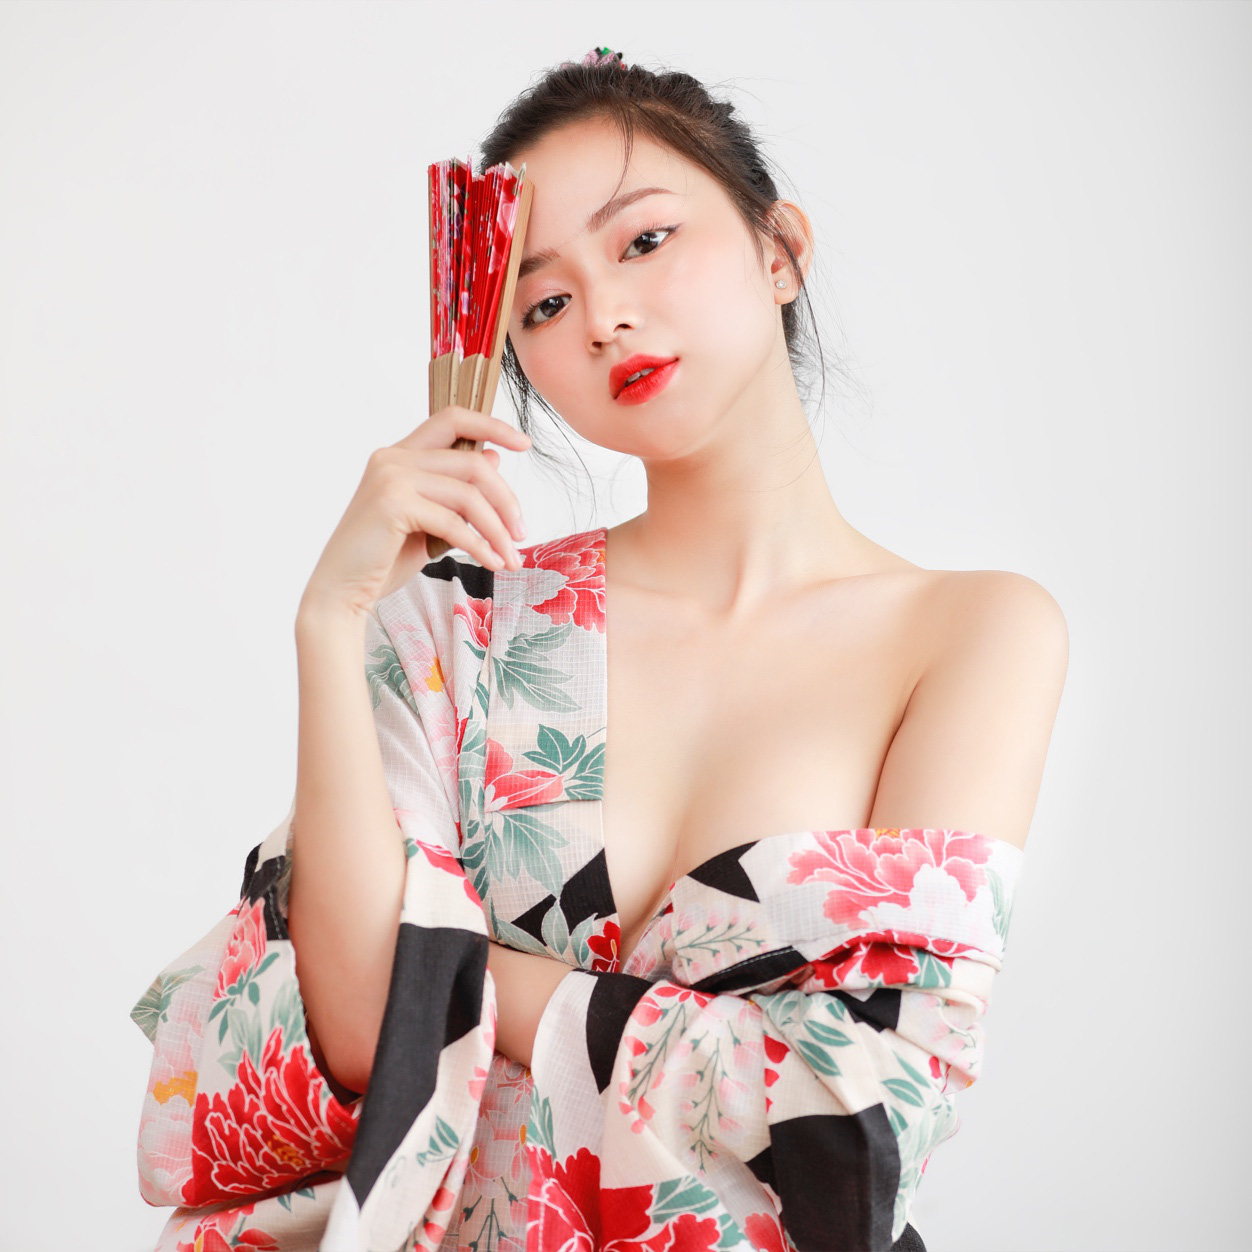 bong-da.info - hot girl streamer Hải Phòng sinh năm 1999 lần đầu mặc kimono...